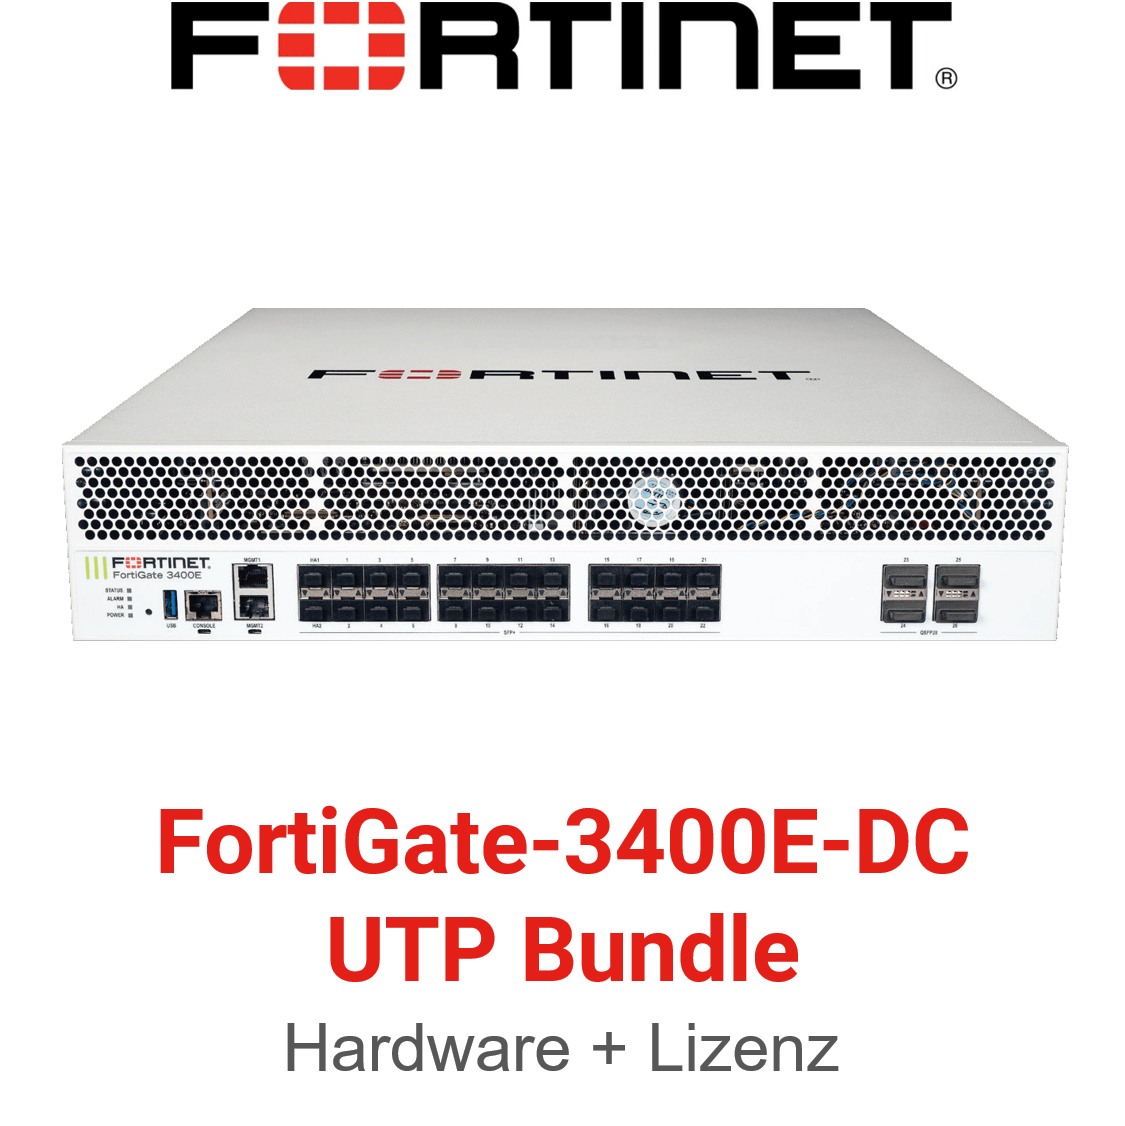 Fortinet FortiGate-3400E-DC - UTM/UTP Bundle (Hardware + Lizenz)